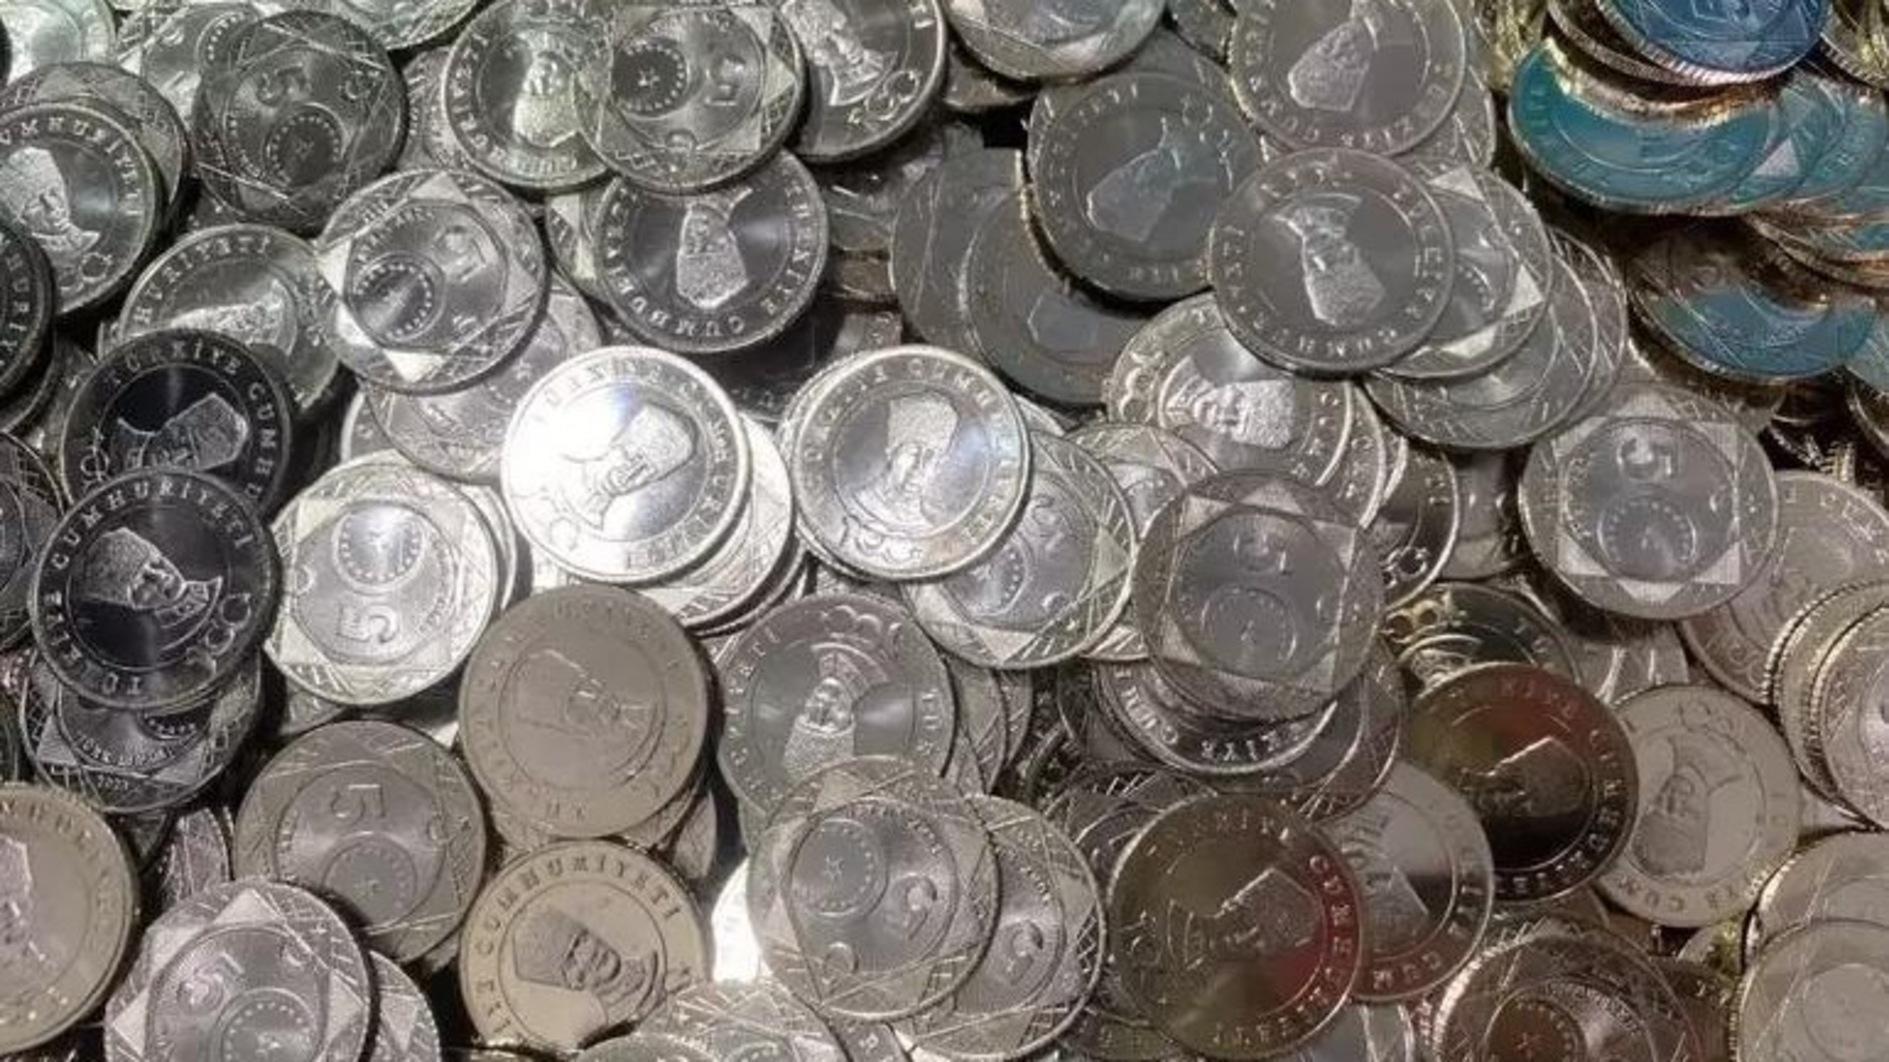 Het reliëf van Atatürk op munten van 5 lire zorgt voor controverse